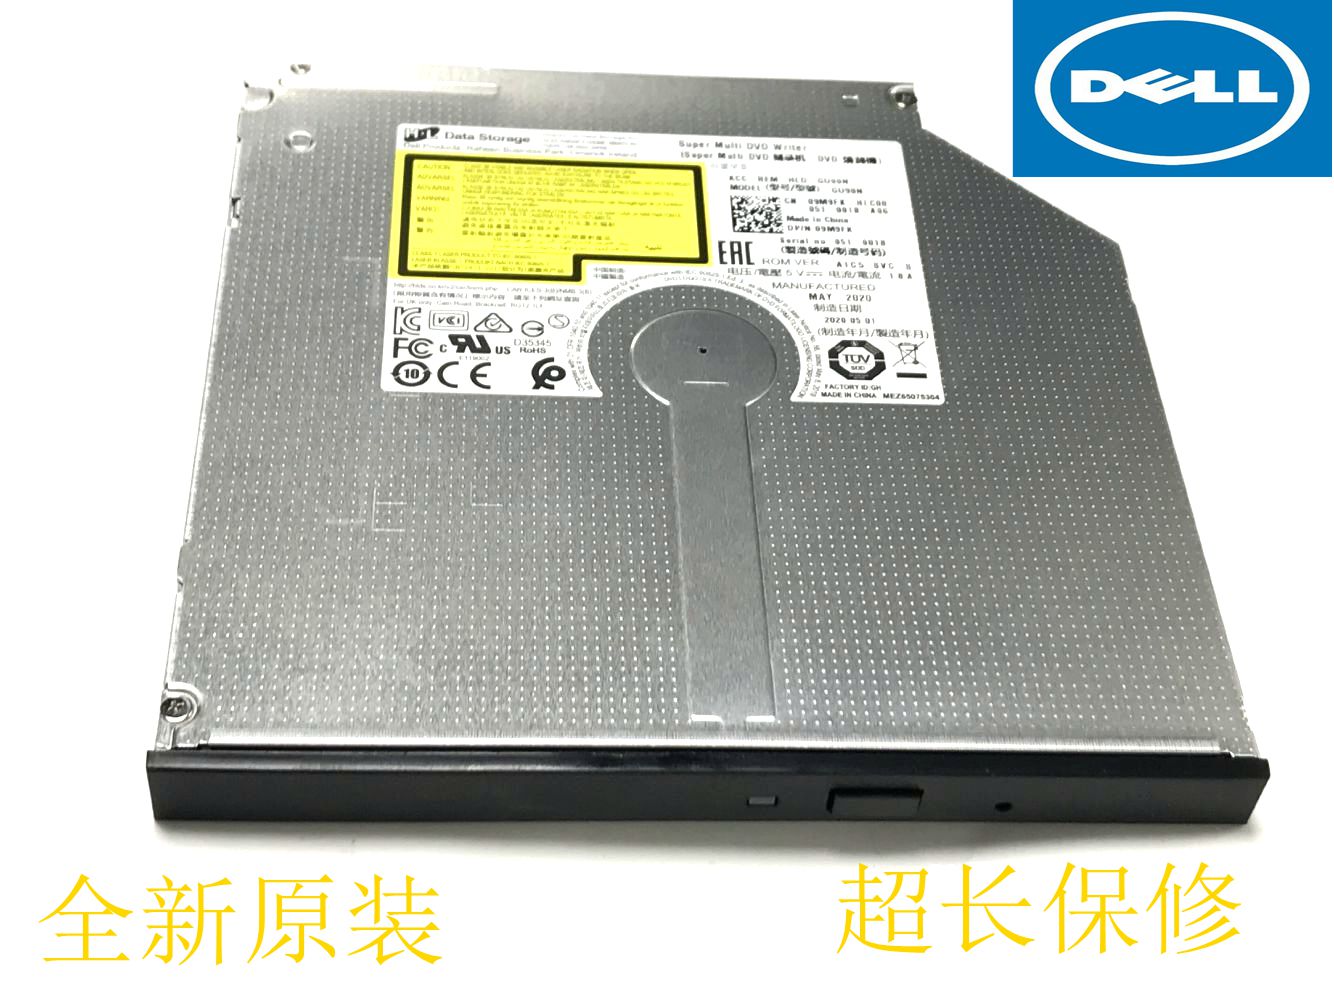 全新Dell Optiplex780 760 580 380 755 745 740小机箱DVD-R光驱 电脑硬件/显示器/电脑周边 光驱/刻录/DVD 原图主图